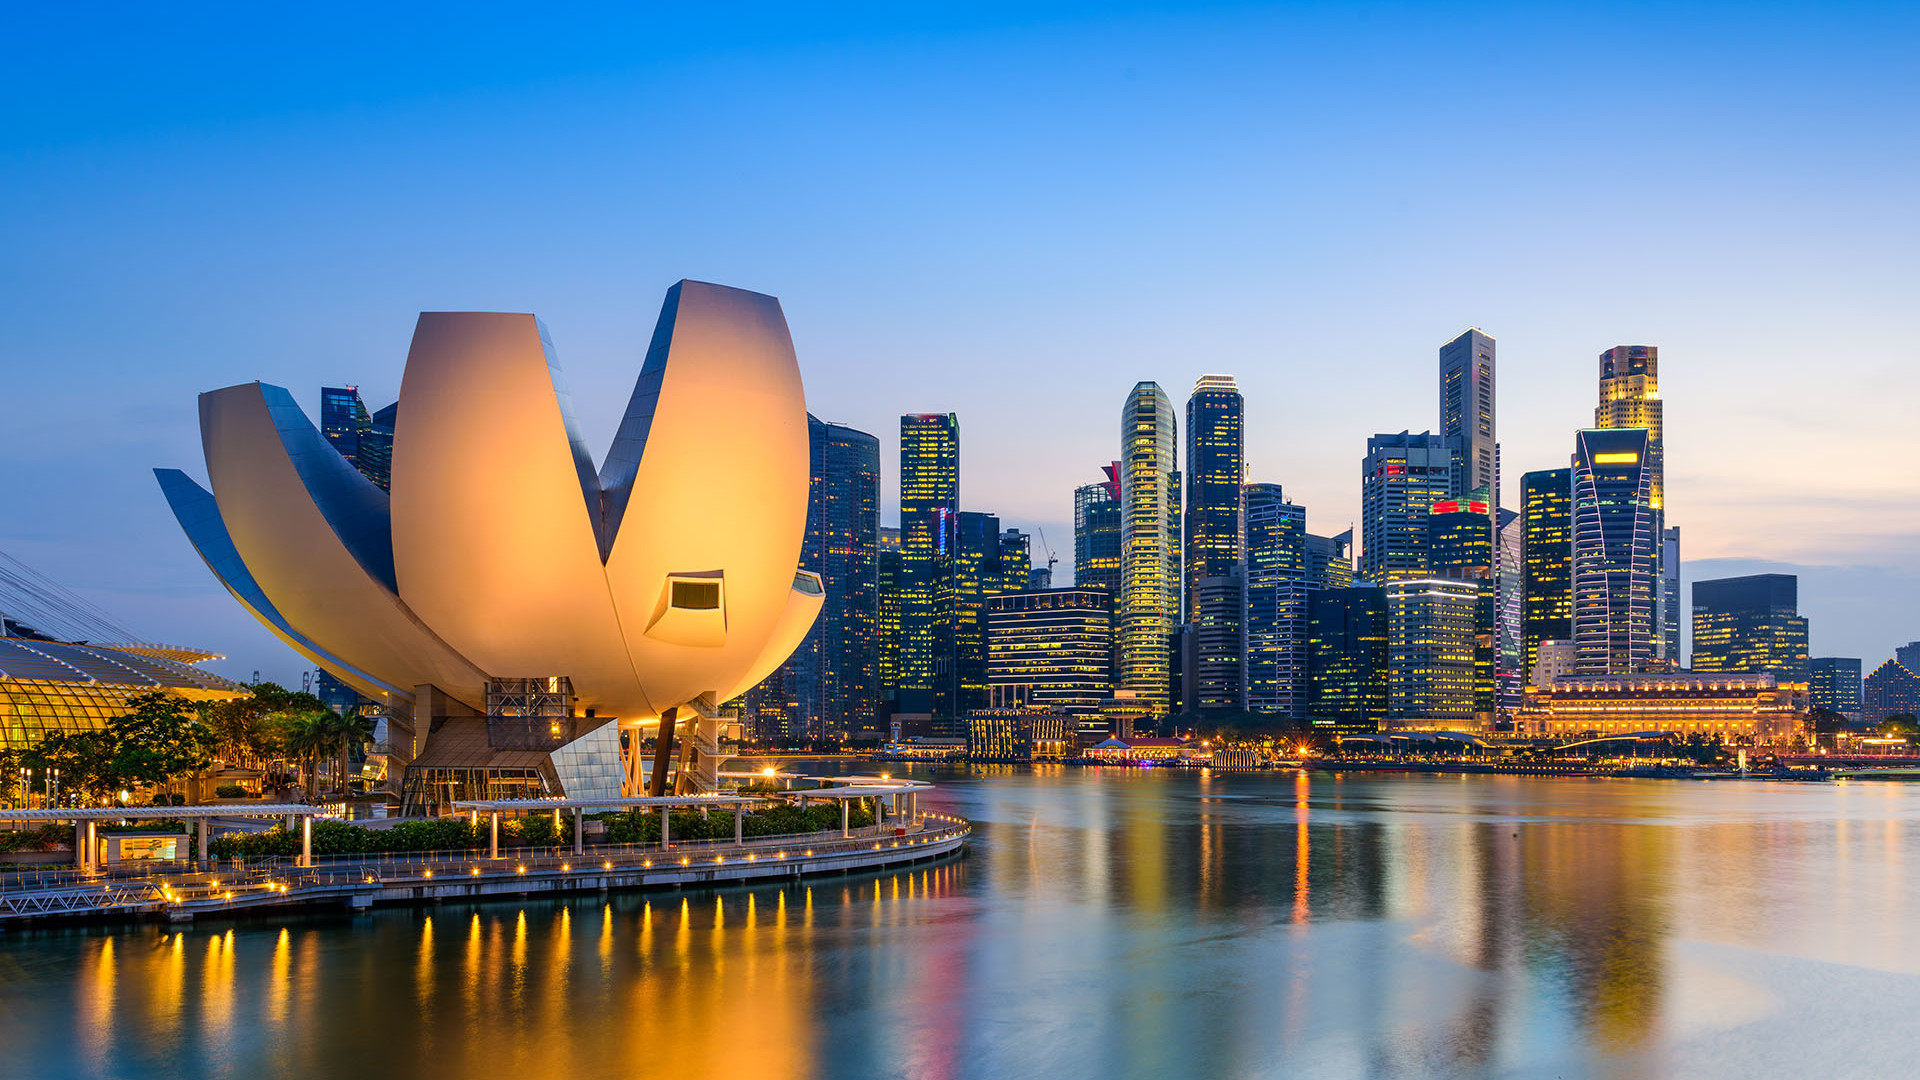 singapore skyline 2021 08 26 18 13 05 utc